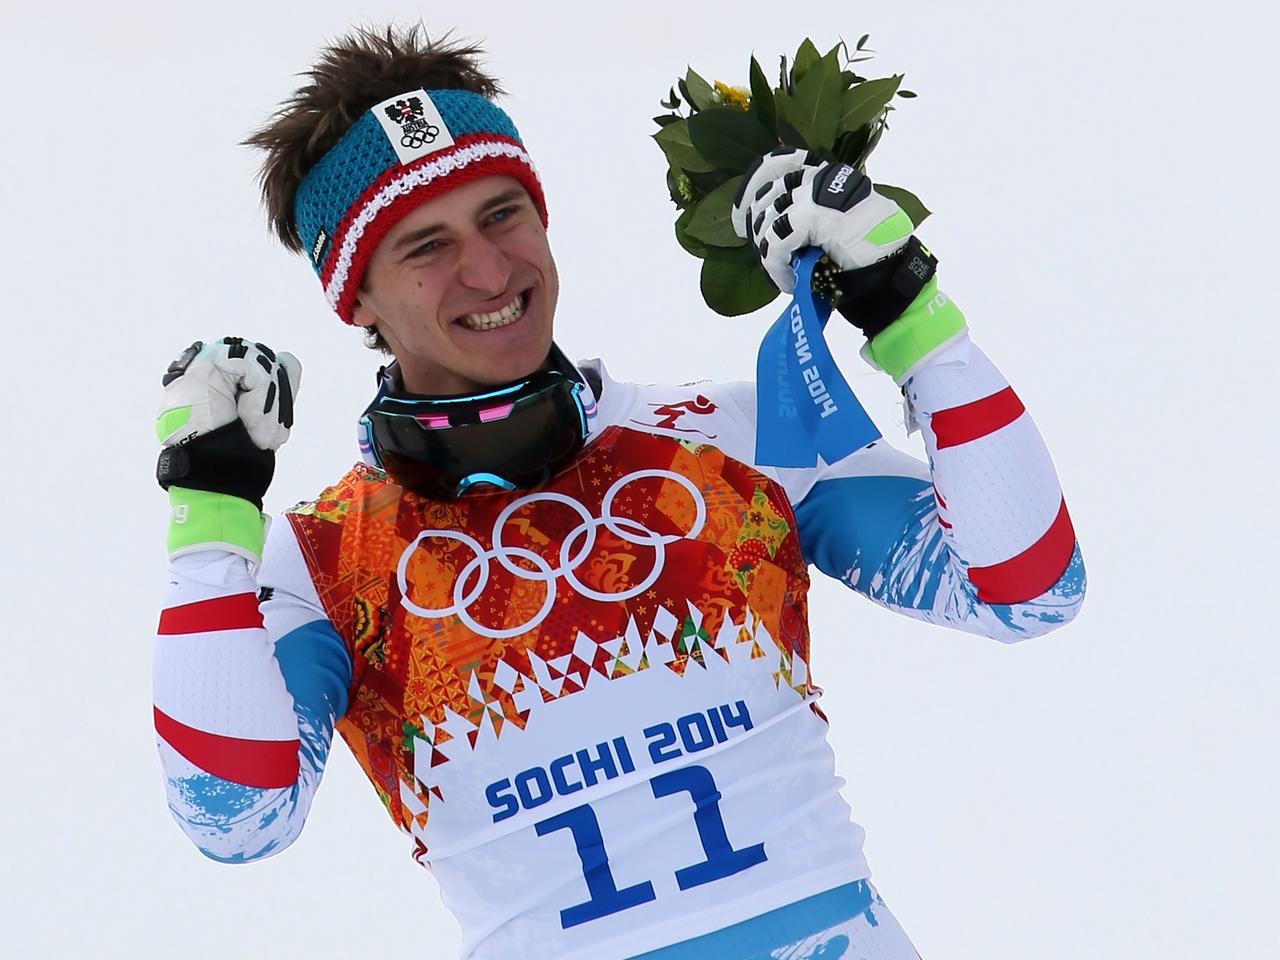 Der Ski-Rennfahrer Matthias Mayer jubelt mit Blumenstrauß in der Hand